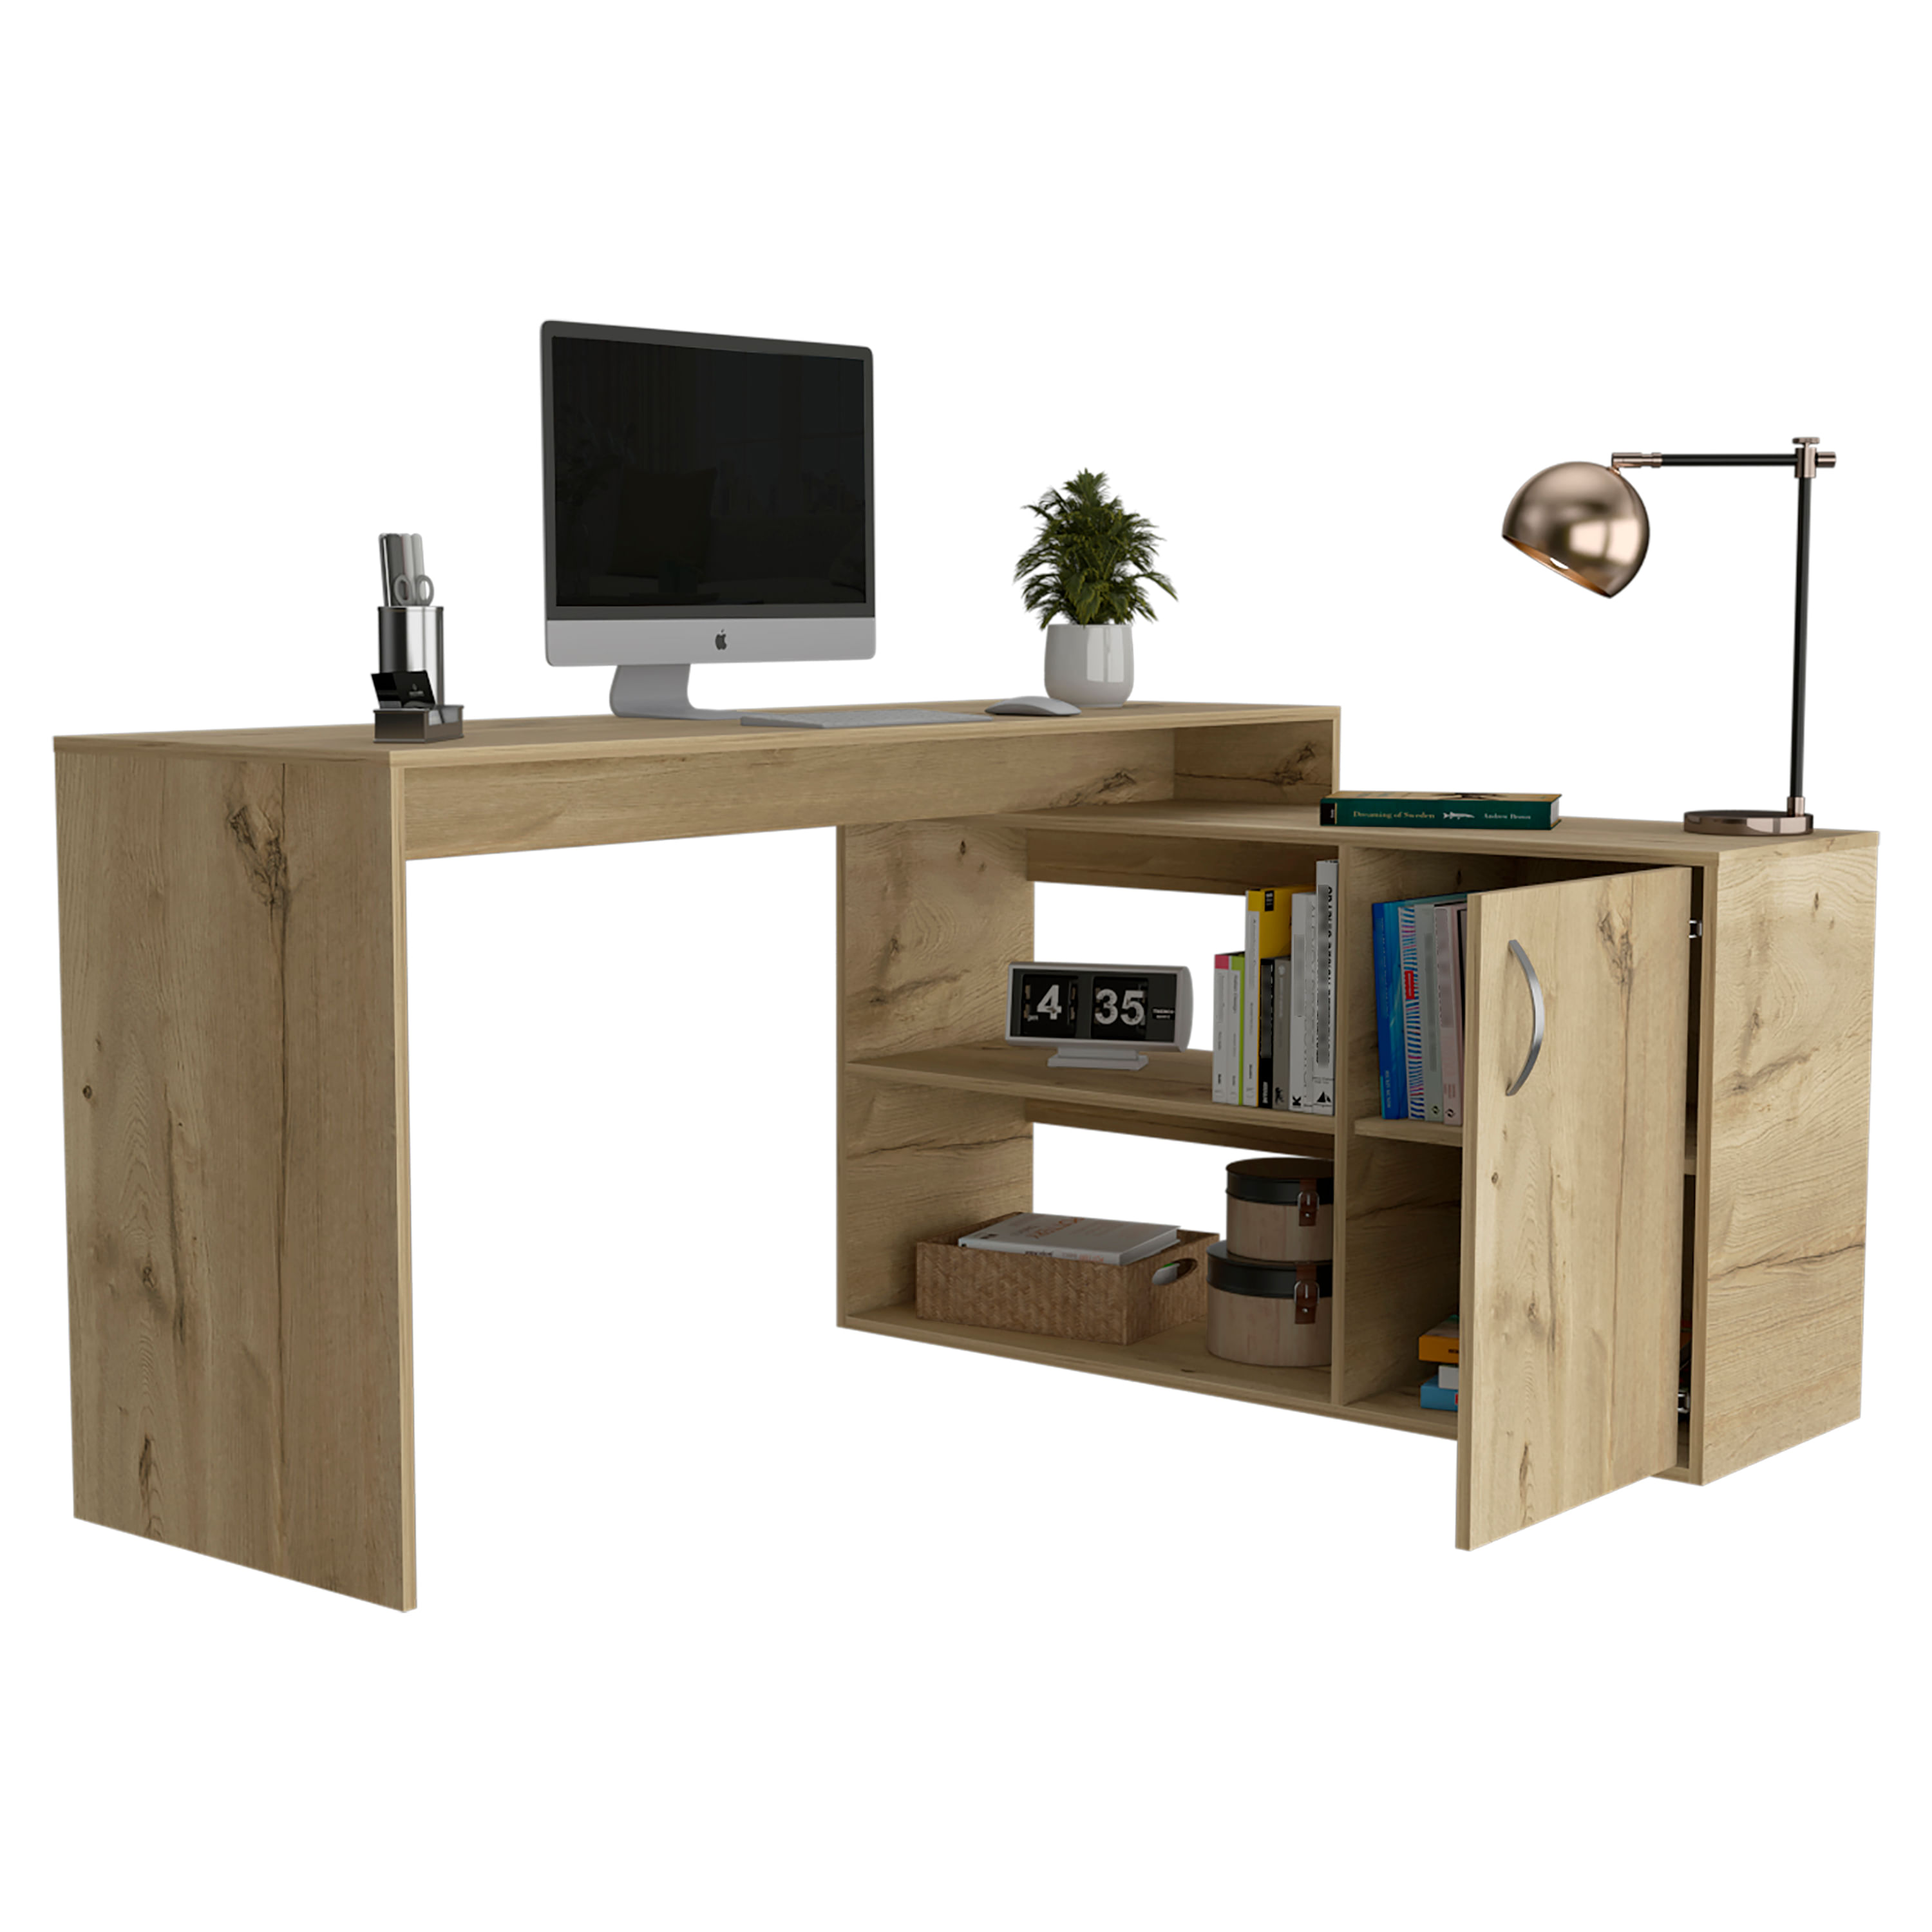 Muebles de oficina y estudios - Armohogar